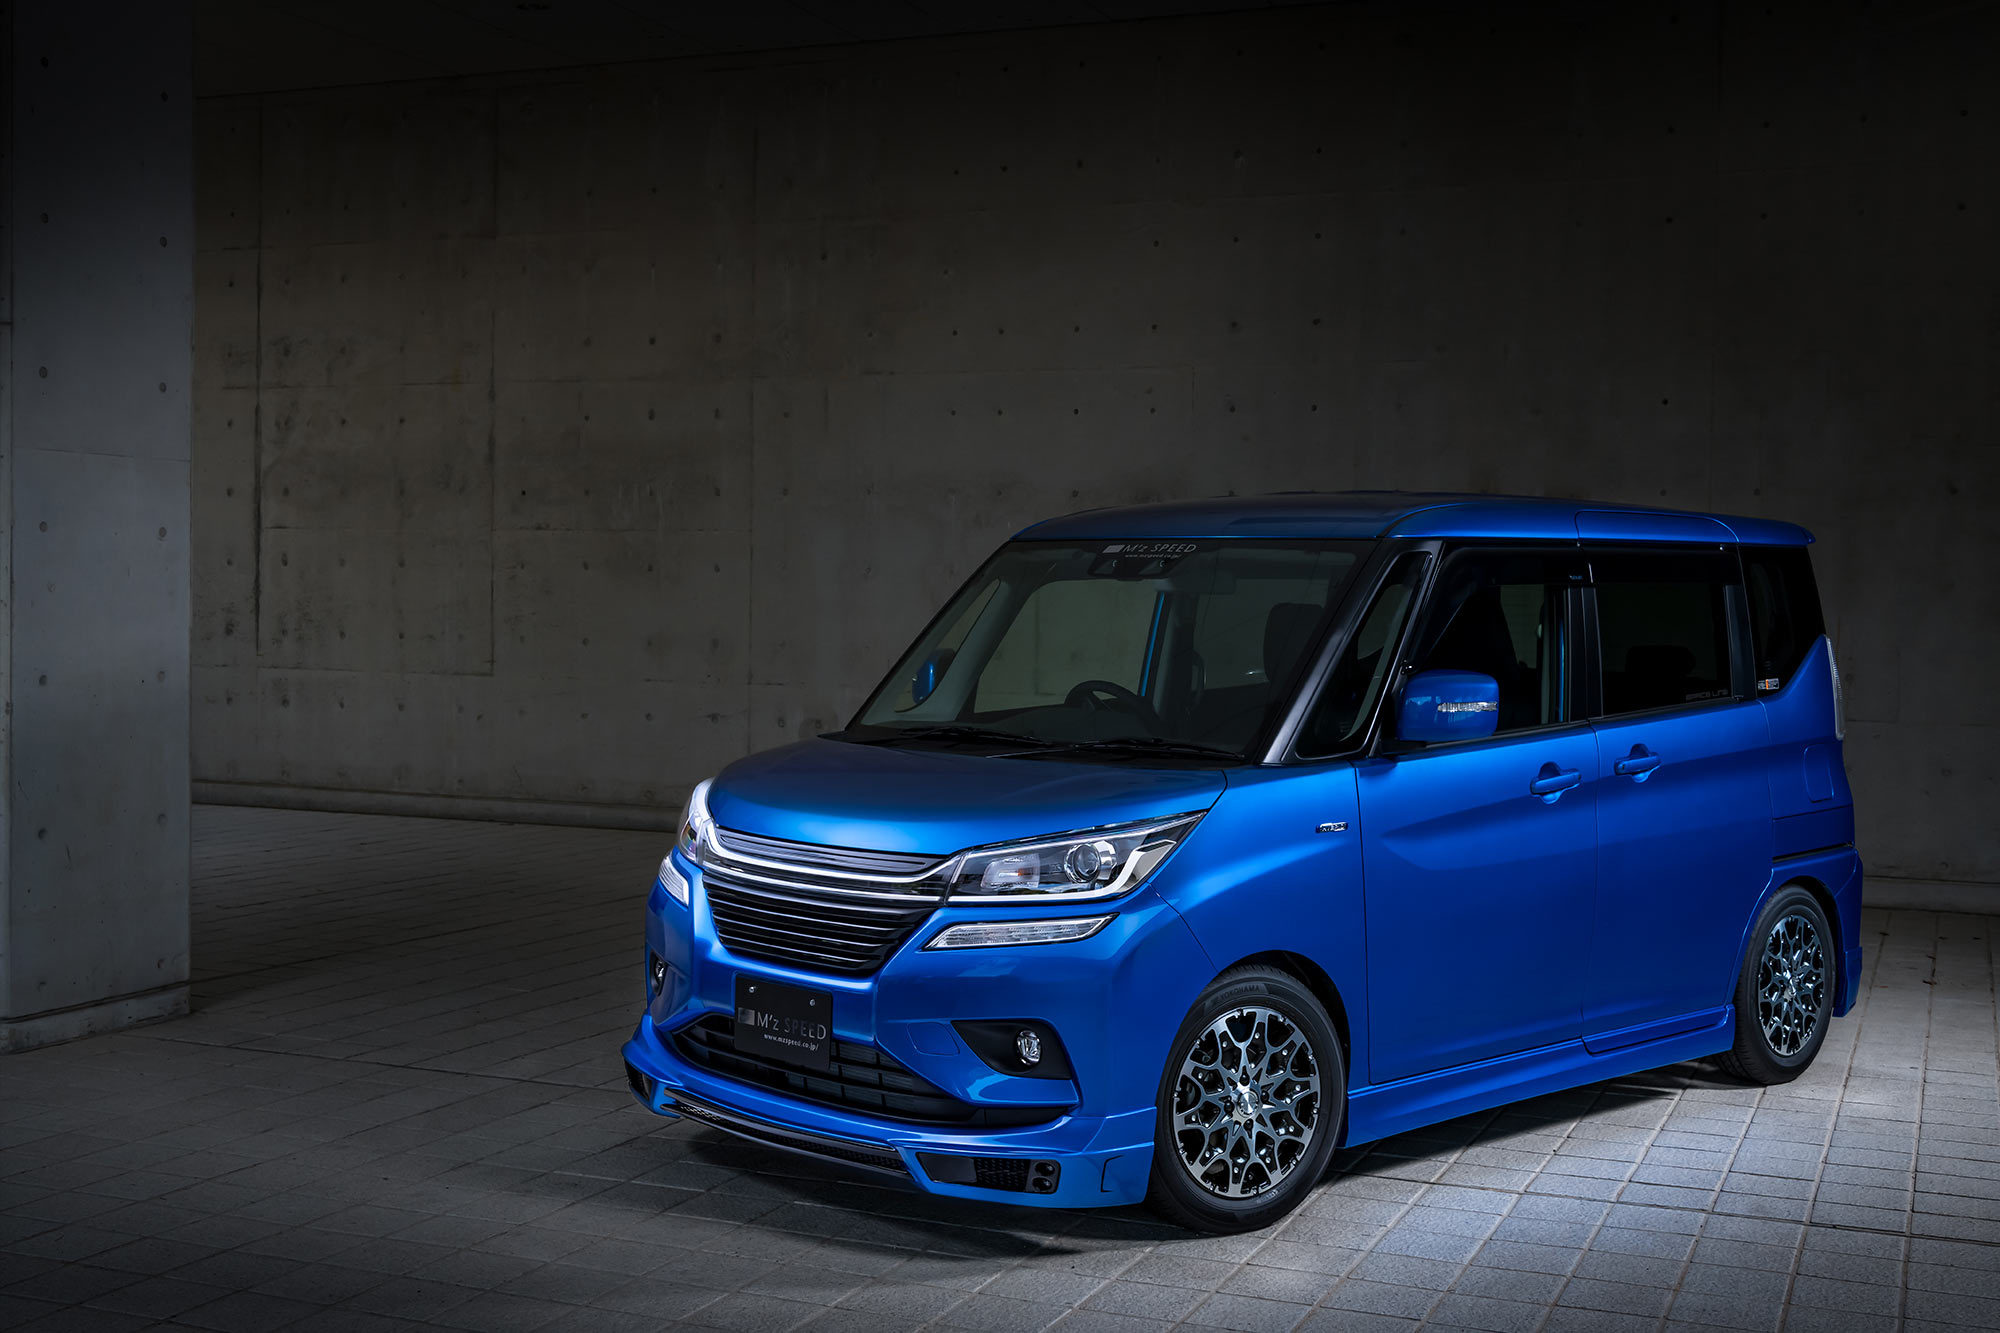 M'z Speed body kit for Suzuki Solio new model